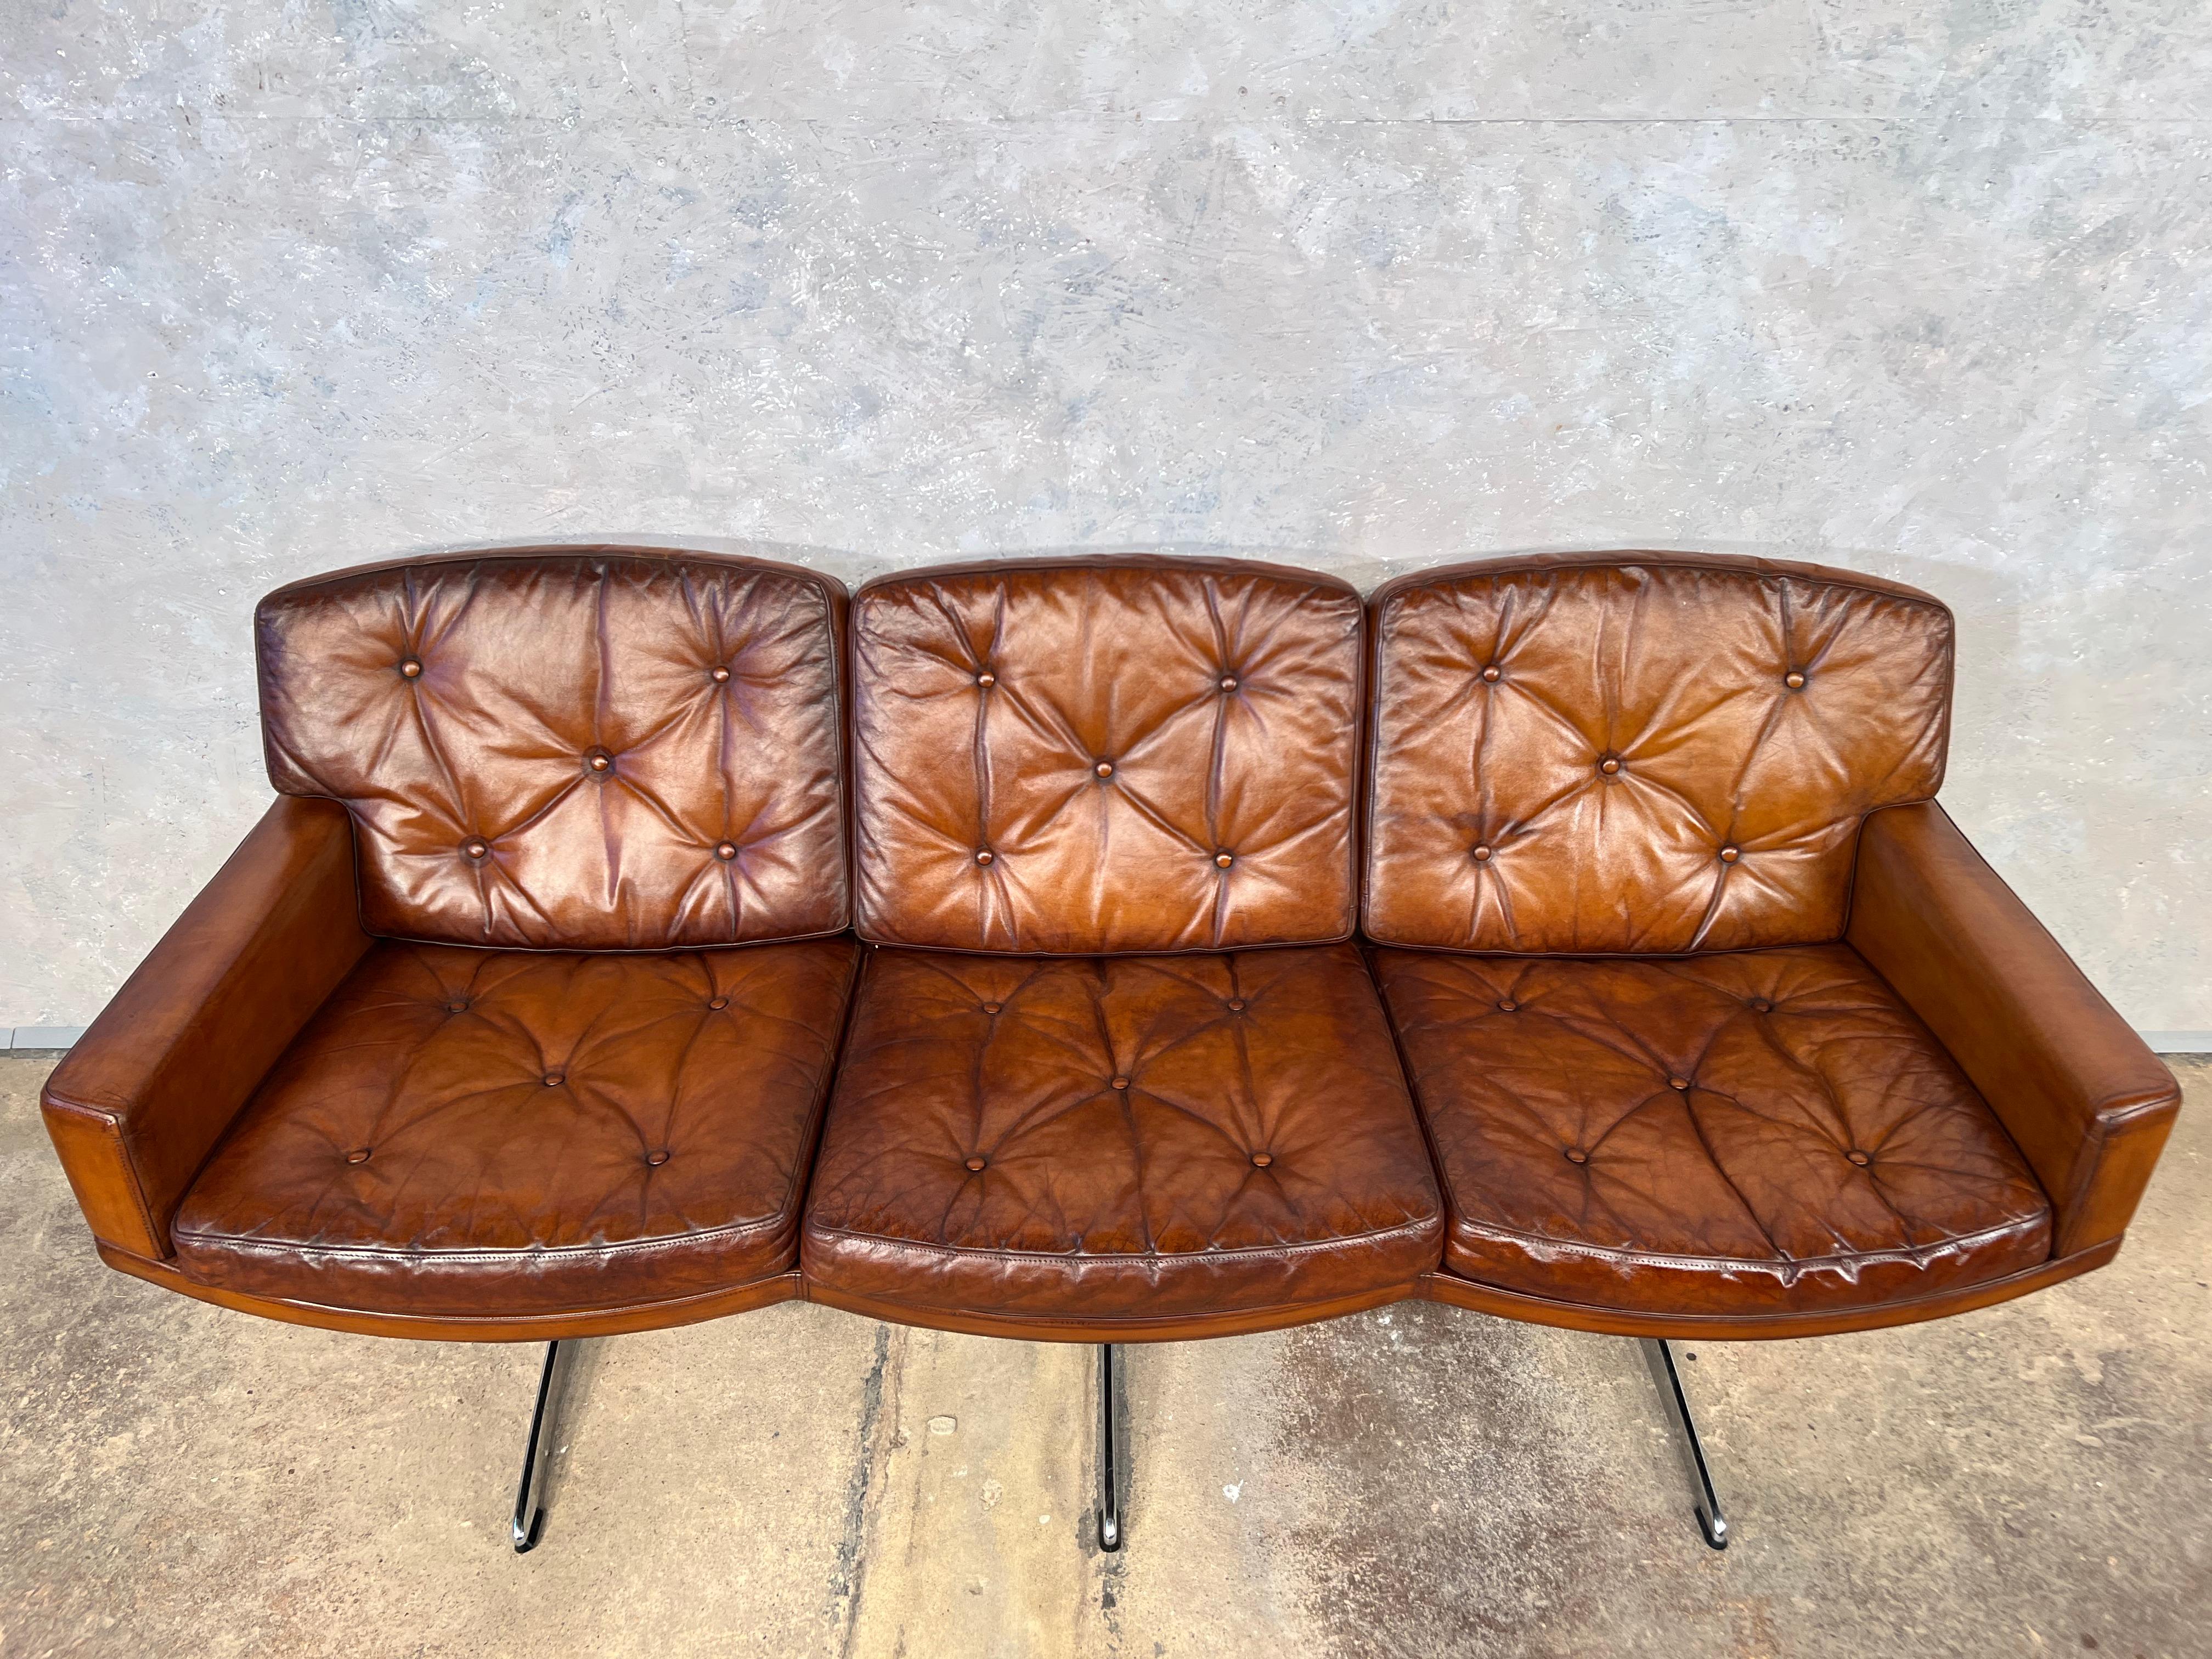 Canapé en cuir très élégant conçu par Frederik Kayser pour Vatne Møbler 1960 Norvège.

Un canapé exceptionnel, très design, très bien assis et très élégant. Un canapé de grande qualité, d'une belle couleur beige patinée et teintée à la main, avec